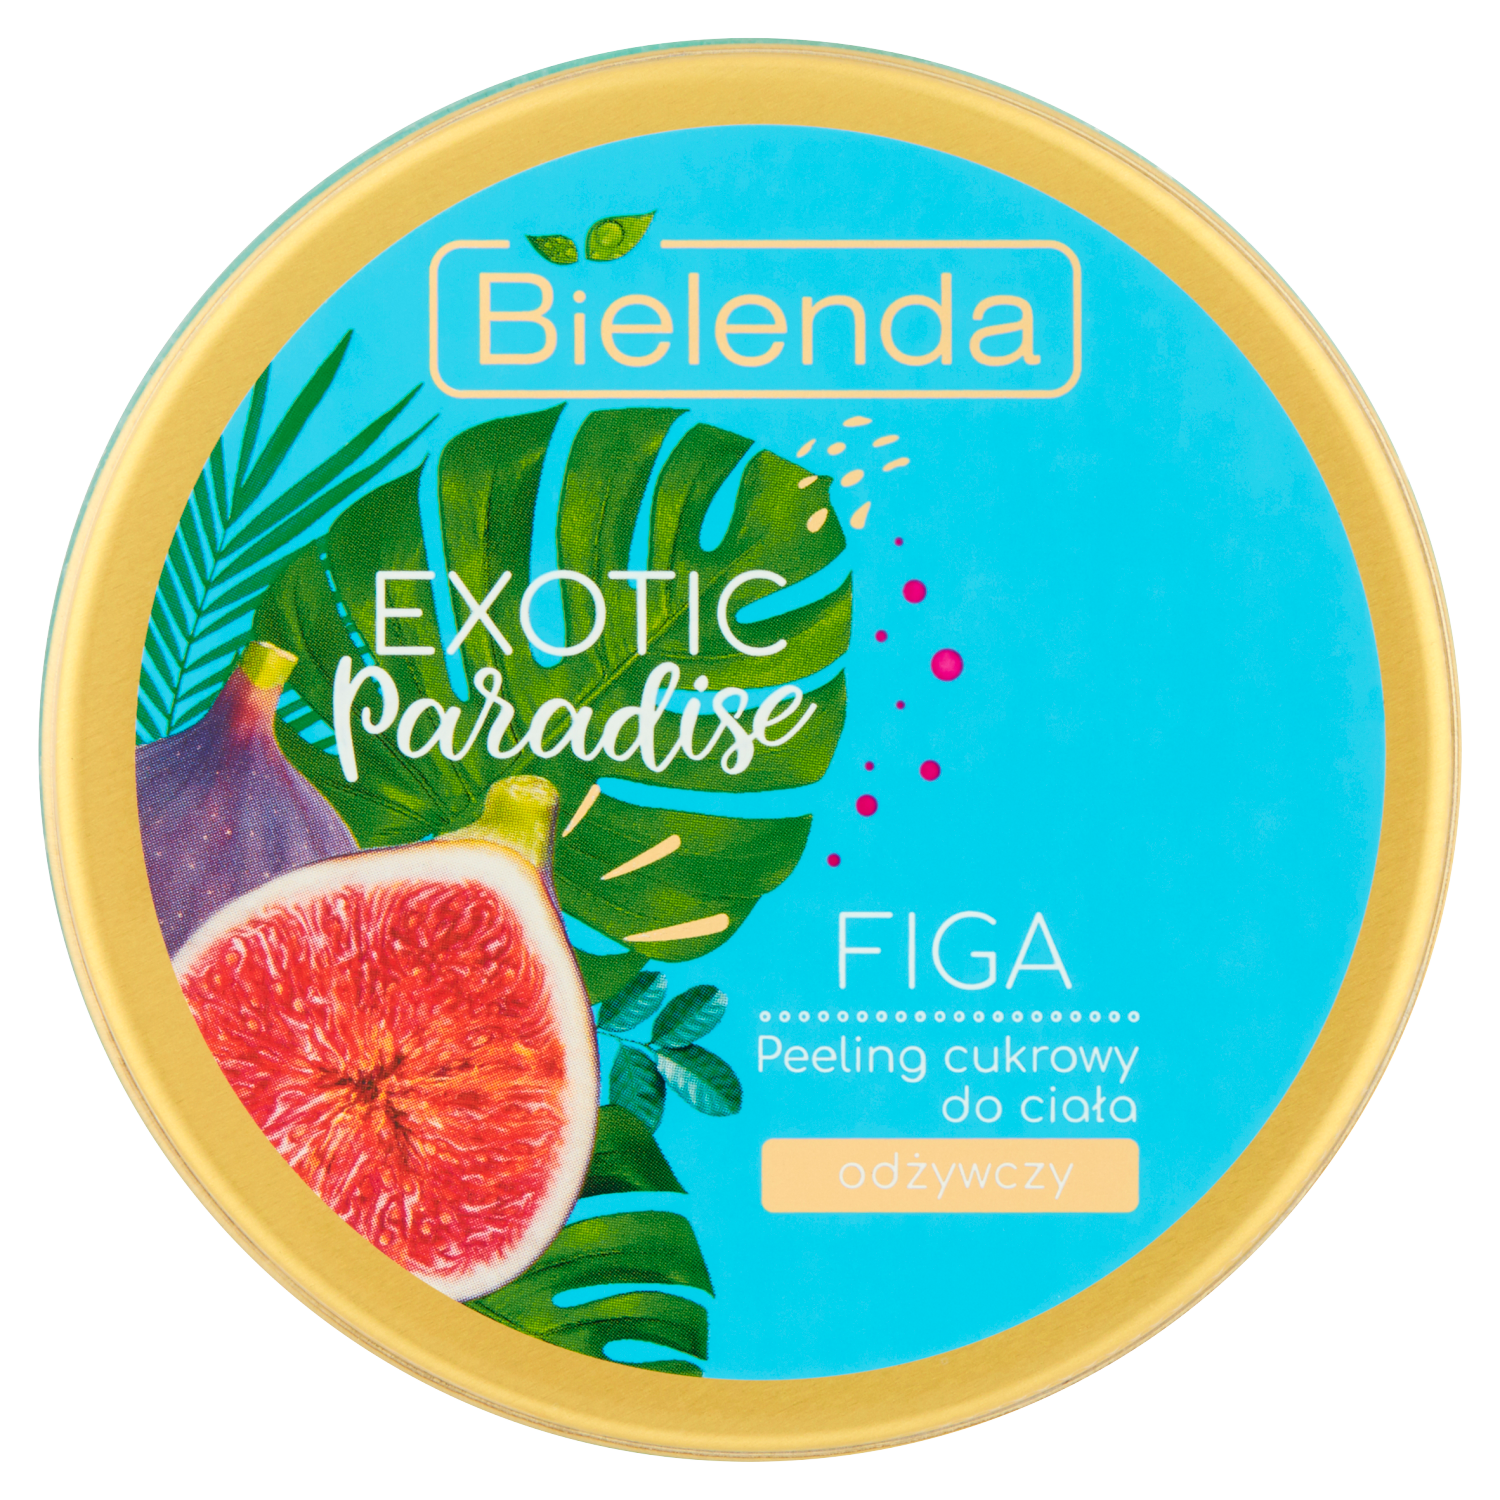 Bielenda Exotic Paradise питательный сахарный скраб для тела с экстрактом инжира, 350 г